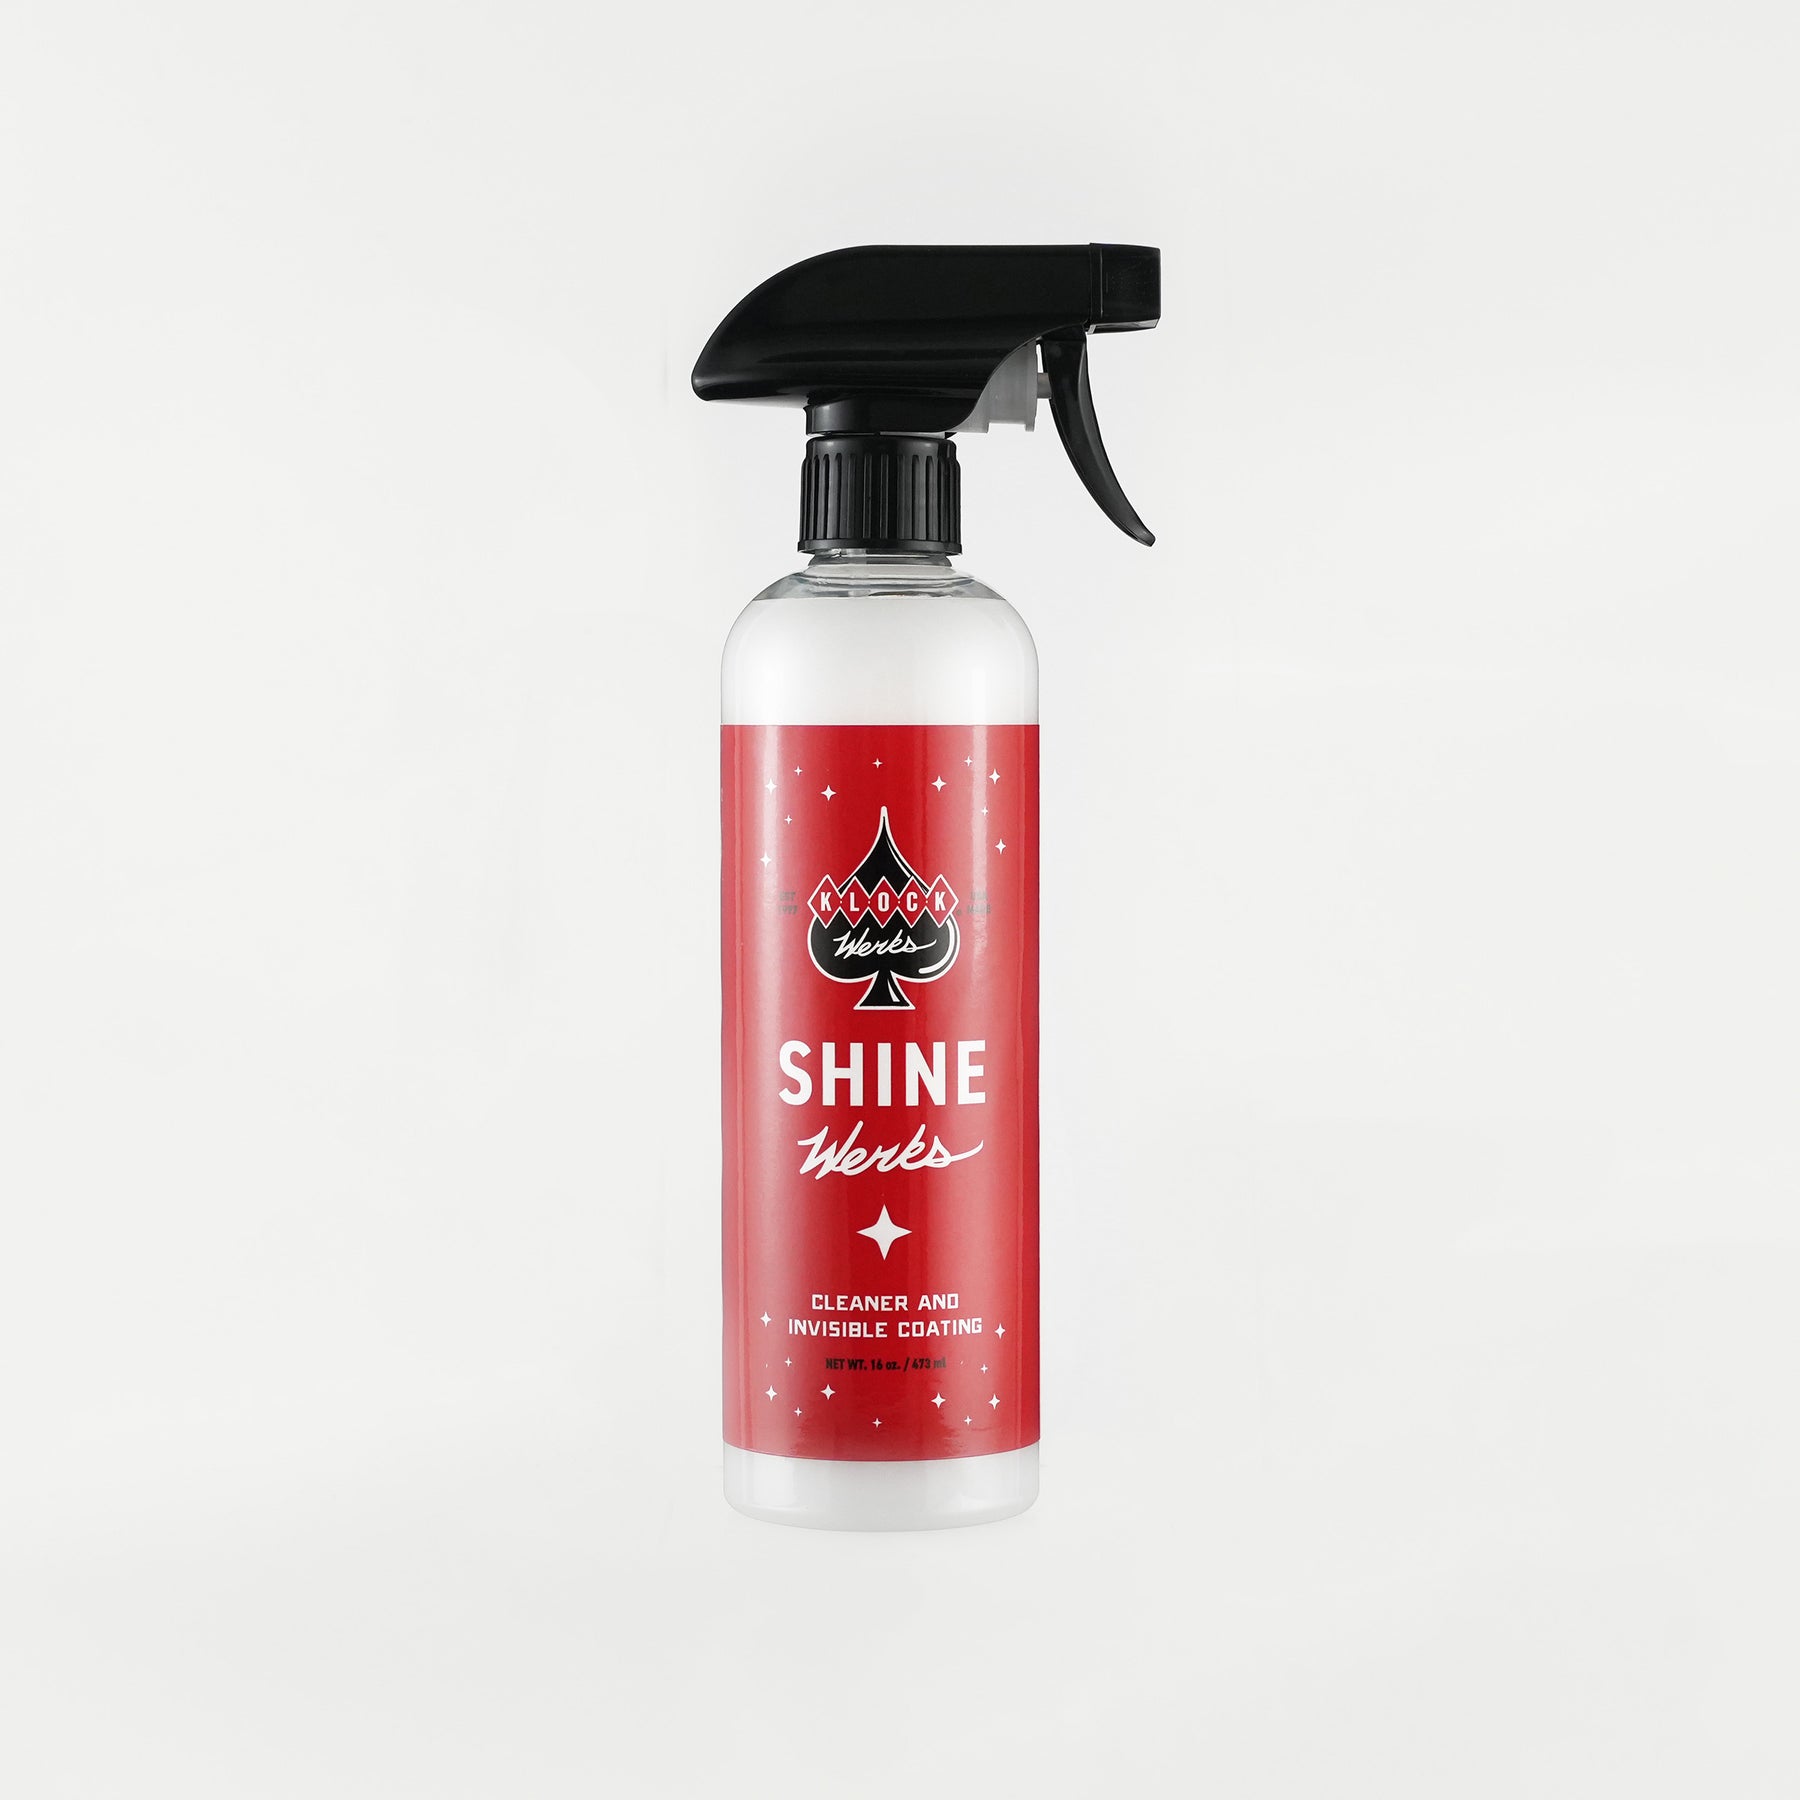 16 oz Shine Werks cleaning and polishing product bottle